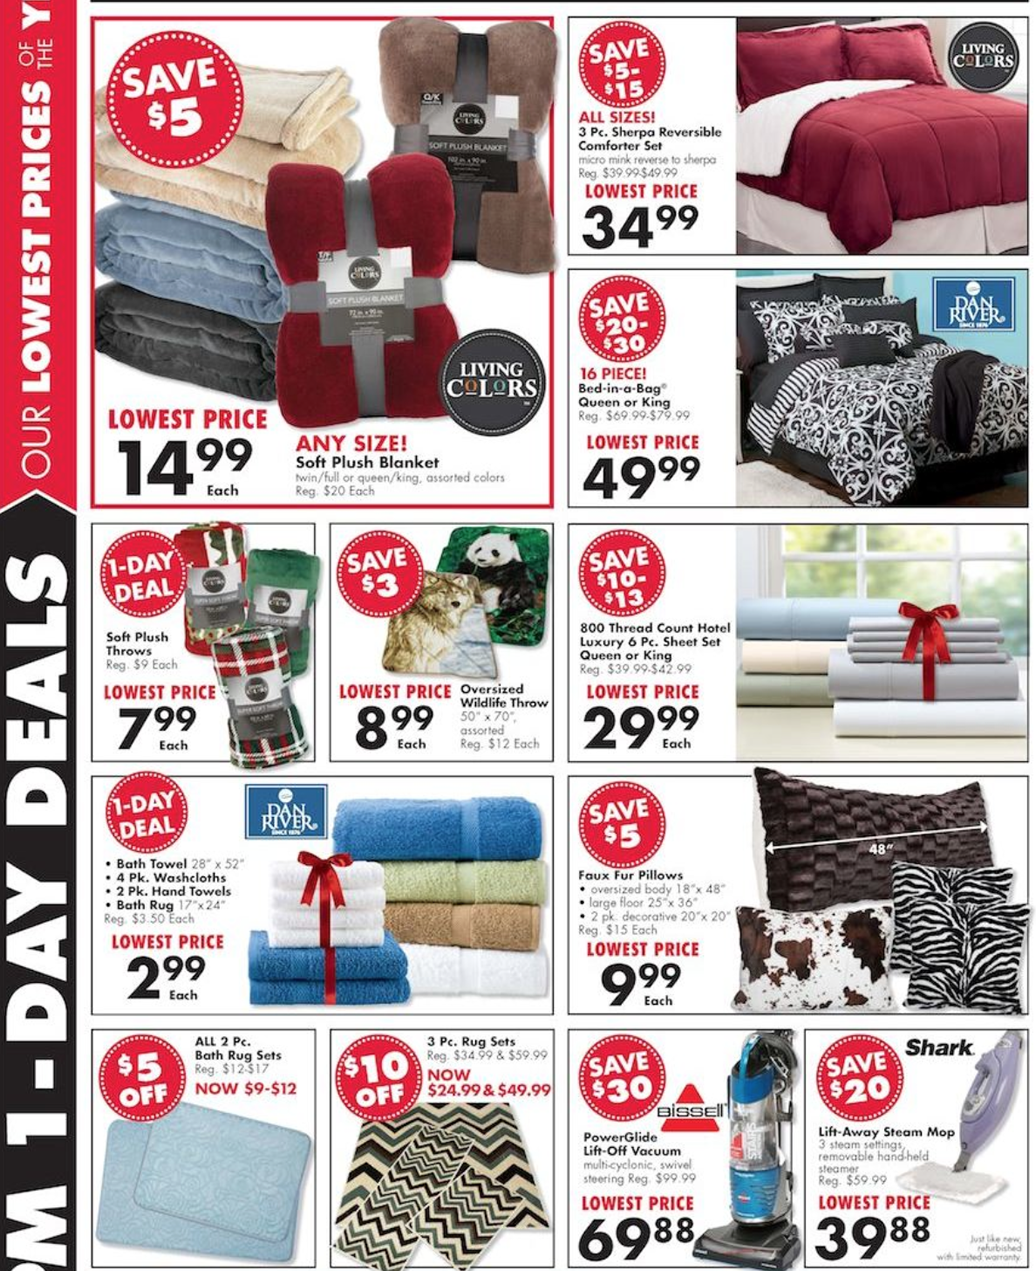 Big Lots Black Friday 2019 Sale & Furniture Deals - mediakits.theygsgroup.com